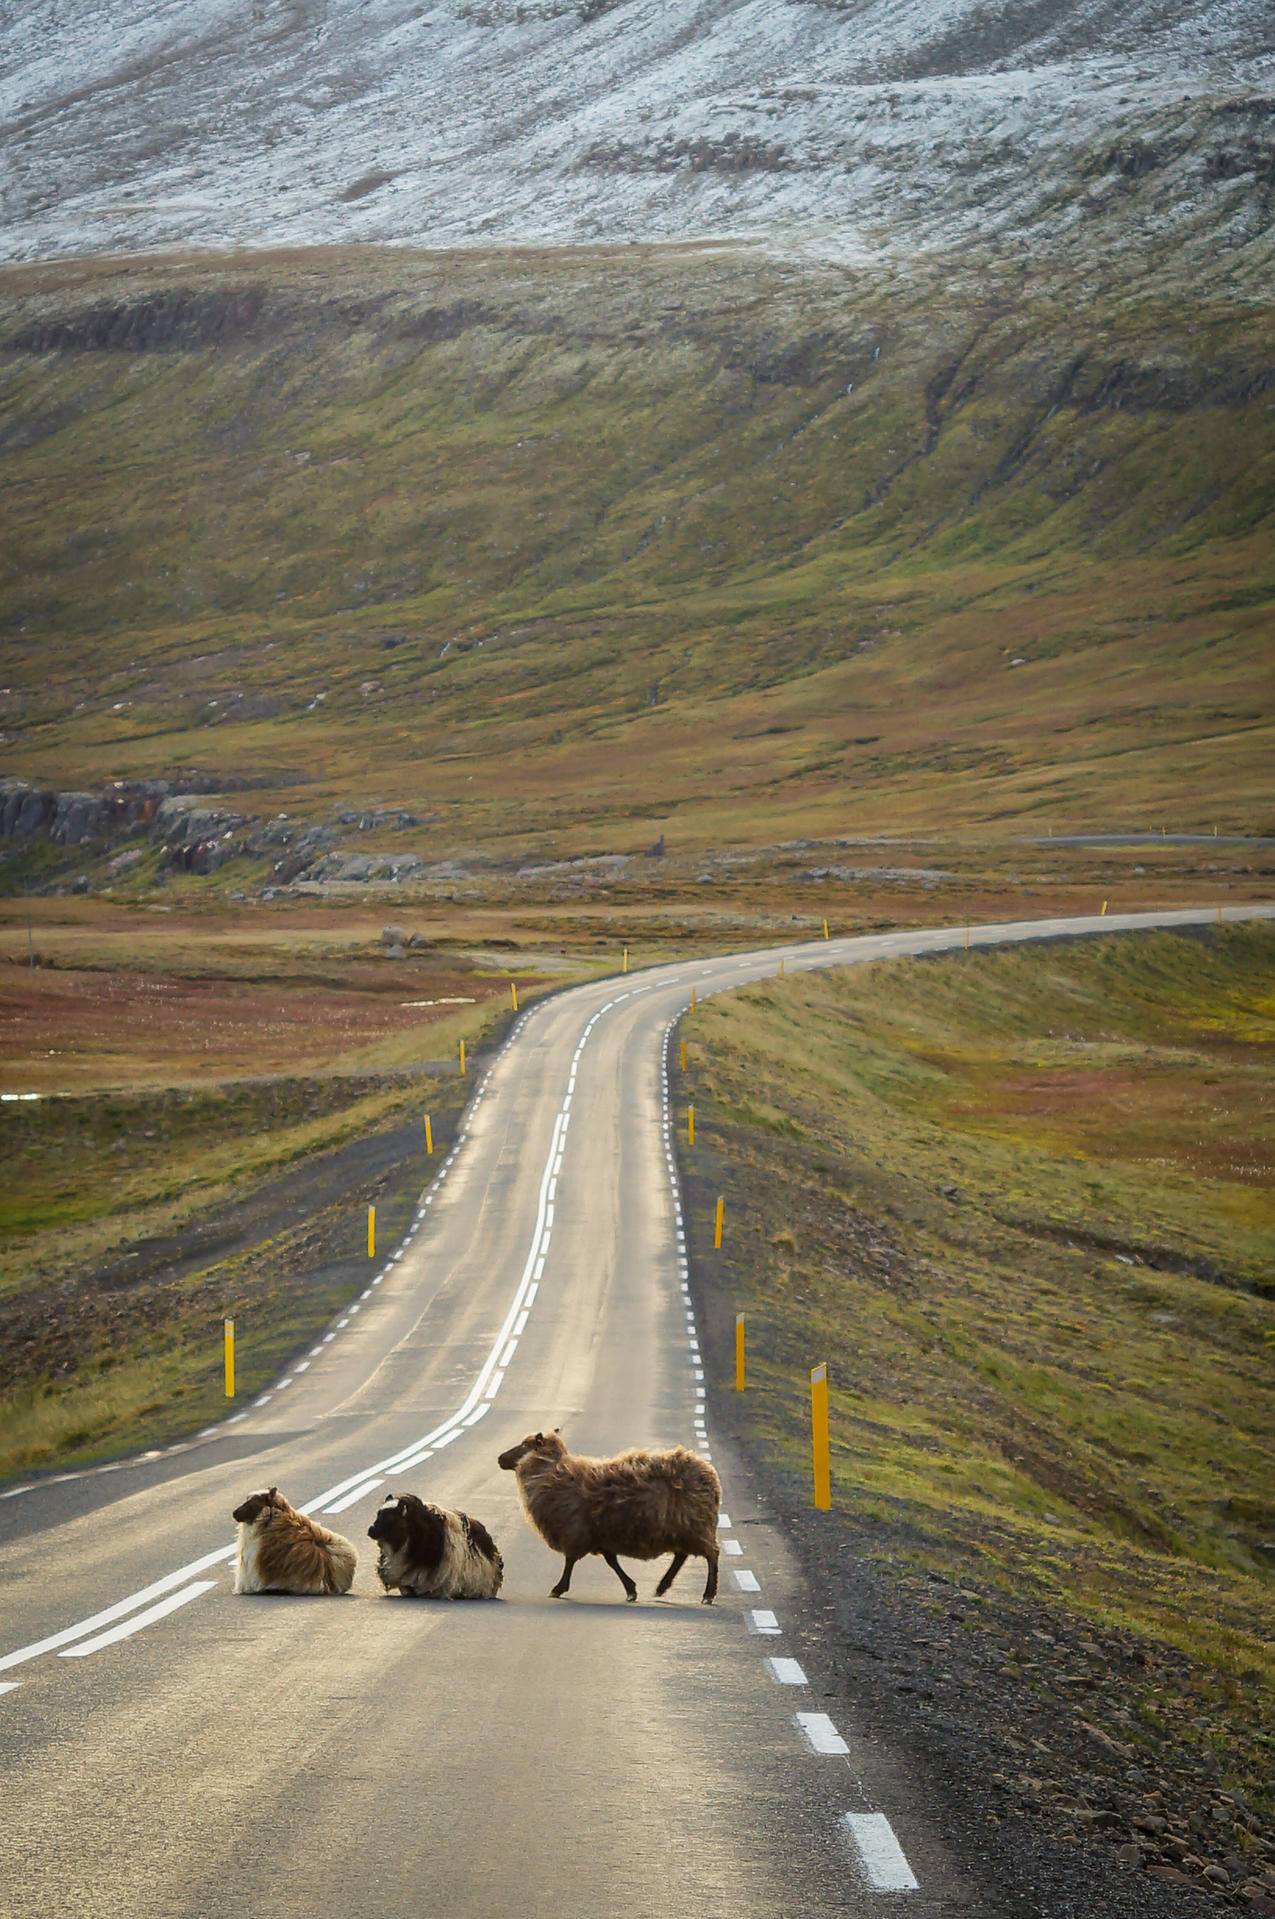 cc0可商用冰岛图片,十字路口,道路,景观